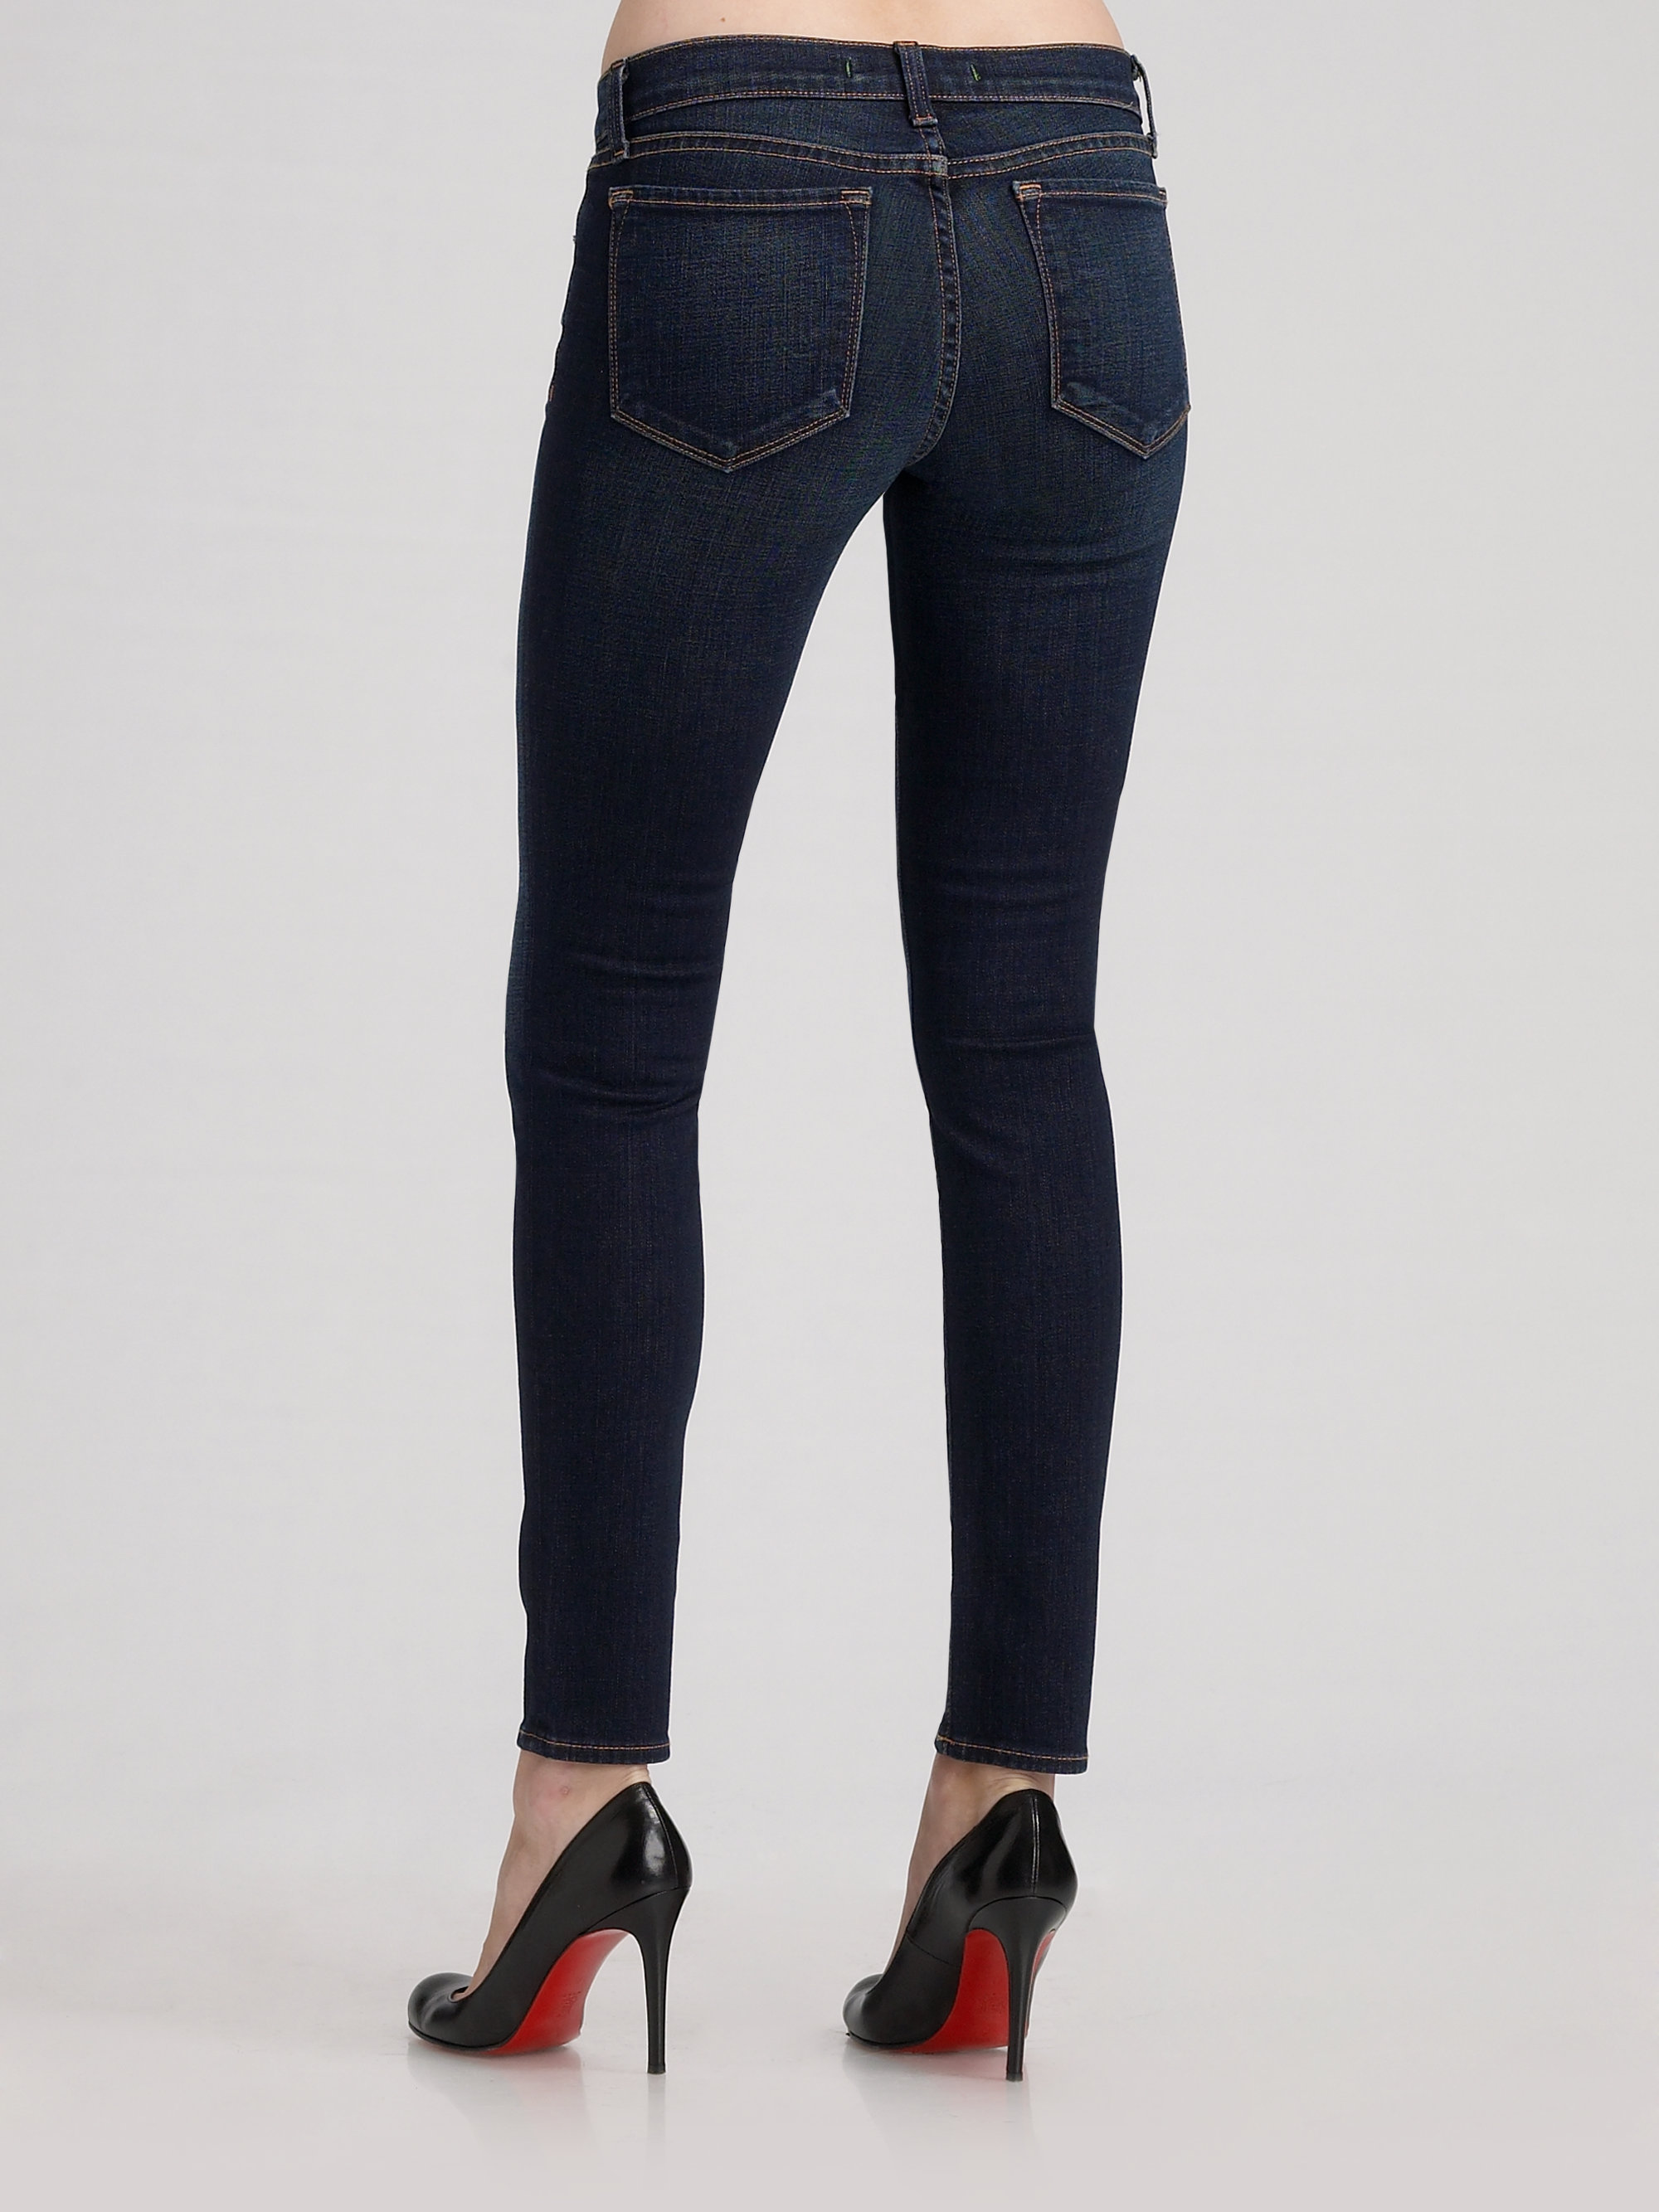 J Brand 910 10 Low Rise Skinny Jeans in Dark Vintage (Blue) - Lyst